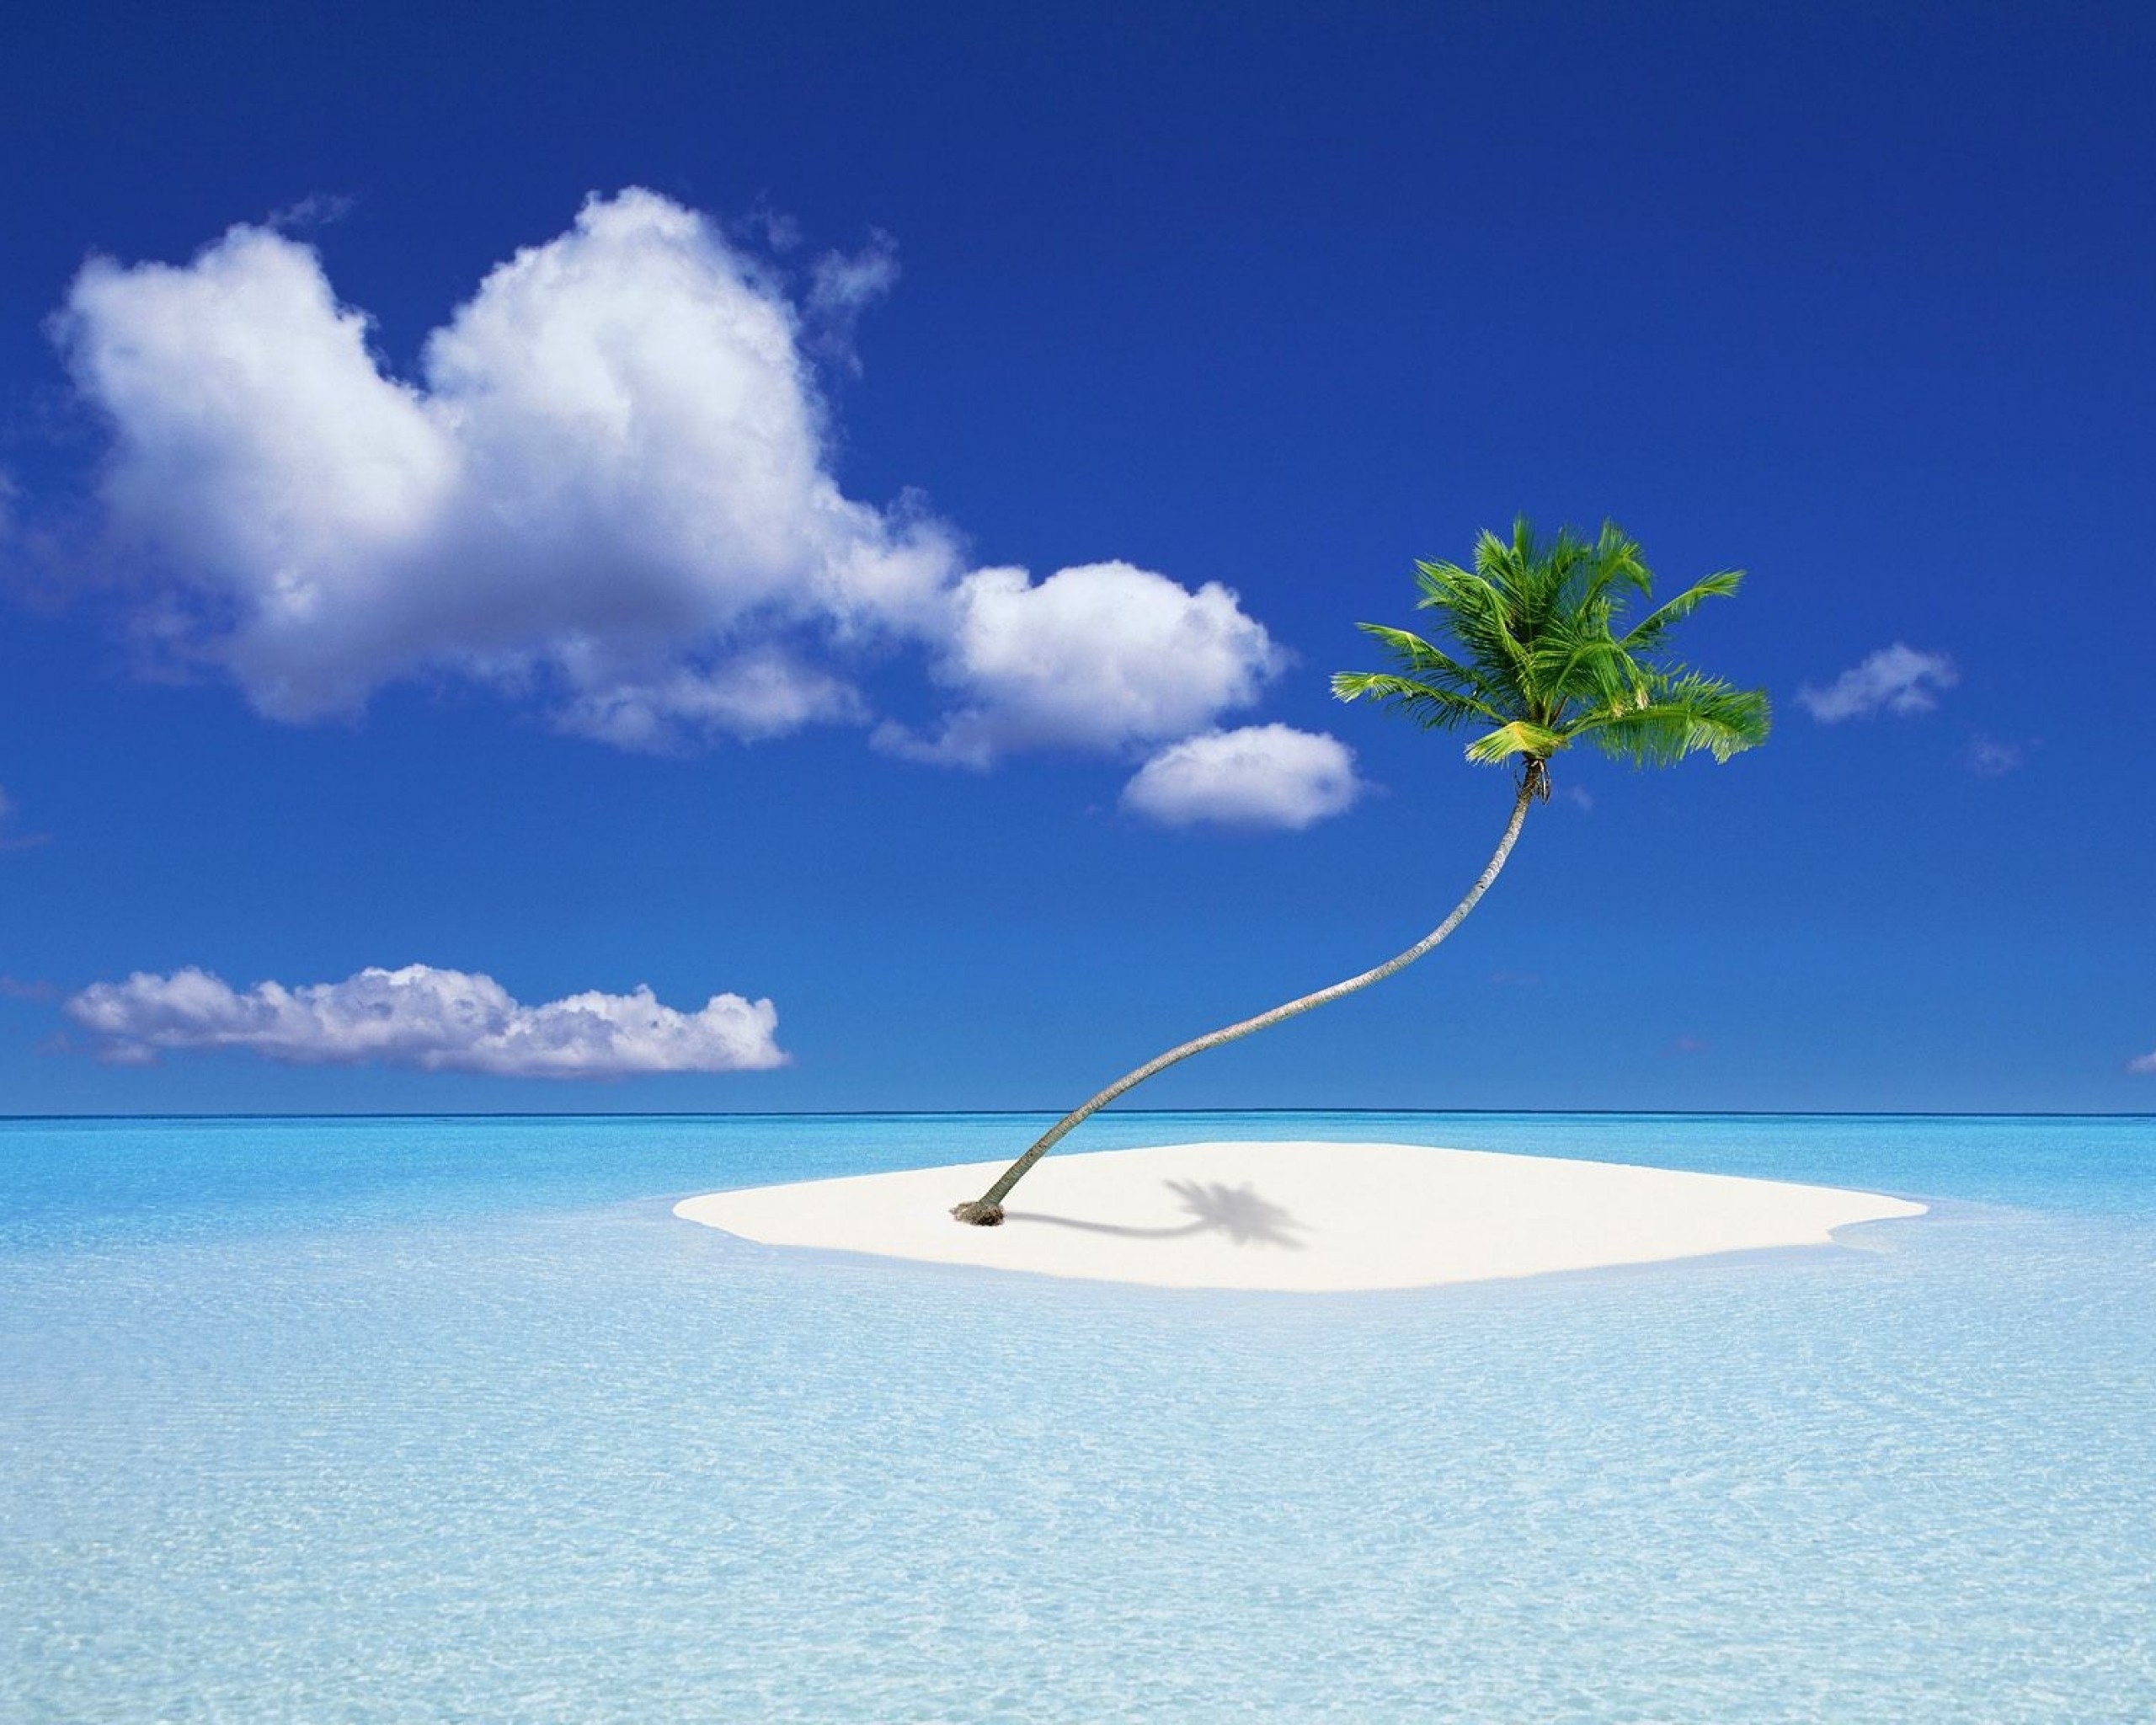 Островок. Остров Пальма. Необитаемый остров в океане. Острова и море. Одинокий остров с пальмой.